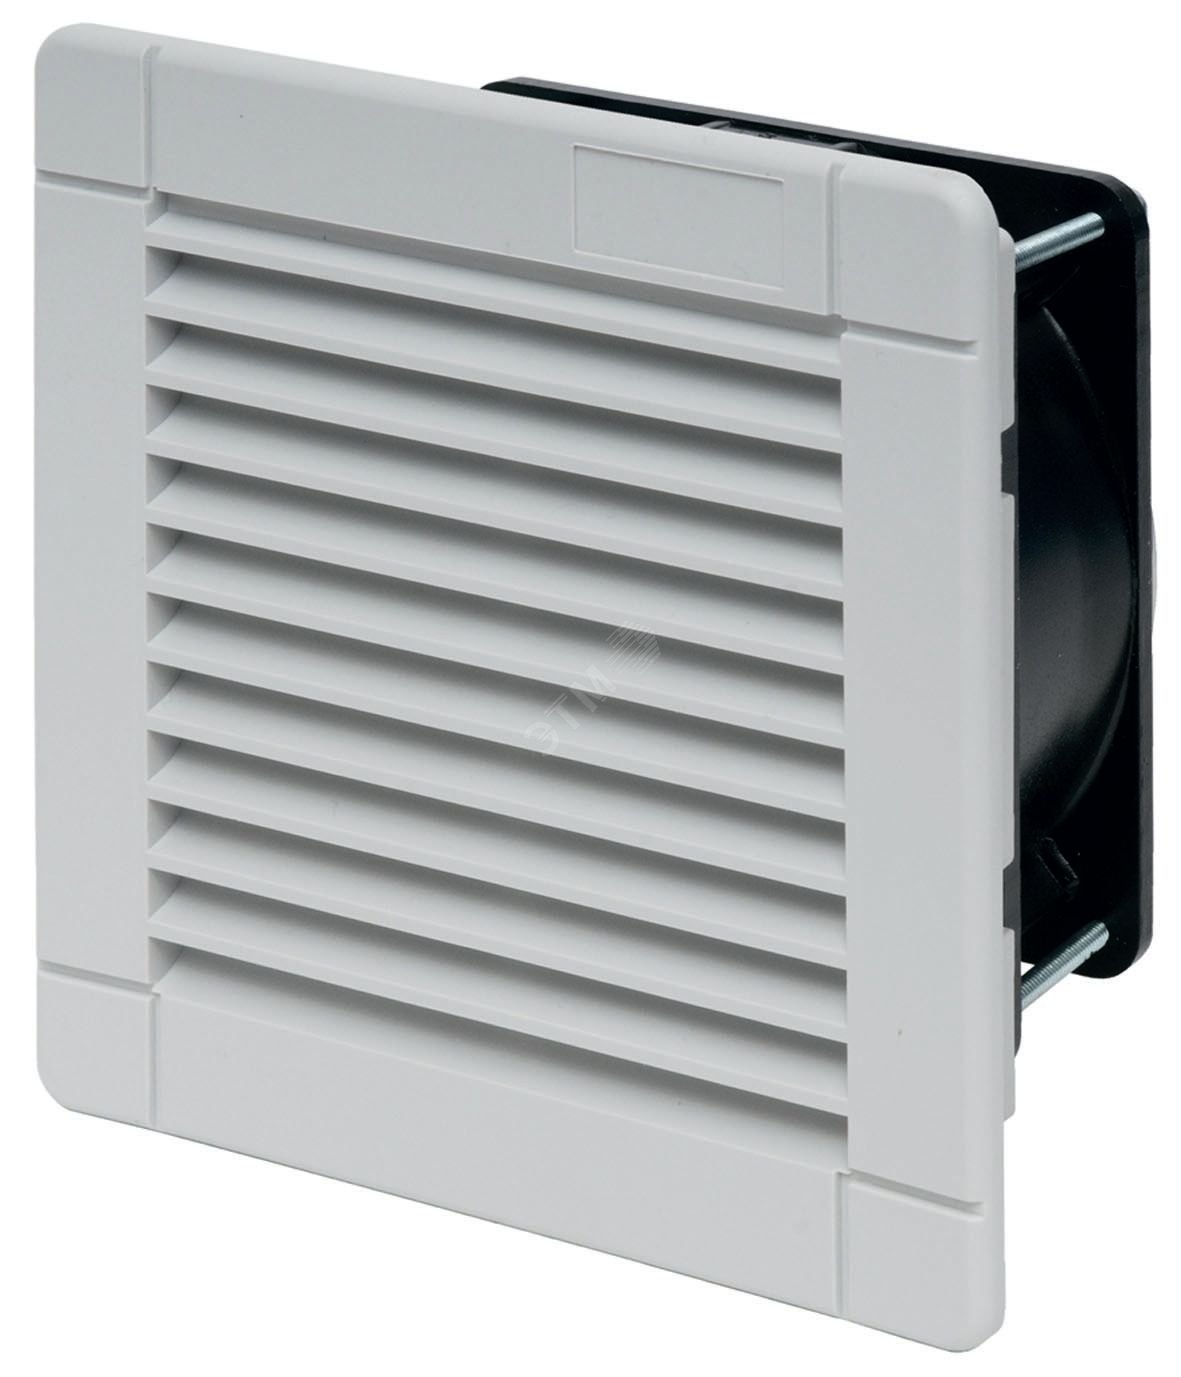 Вентилятор с фильтром версия EMC питание 230В АС расход воздуха 24м3/ч IP54 7F.70.8.230.1020 FINDER